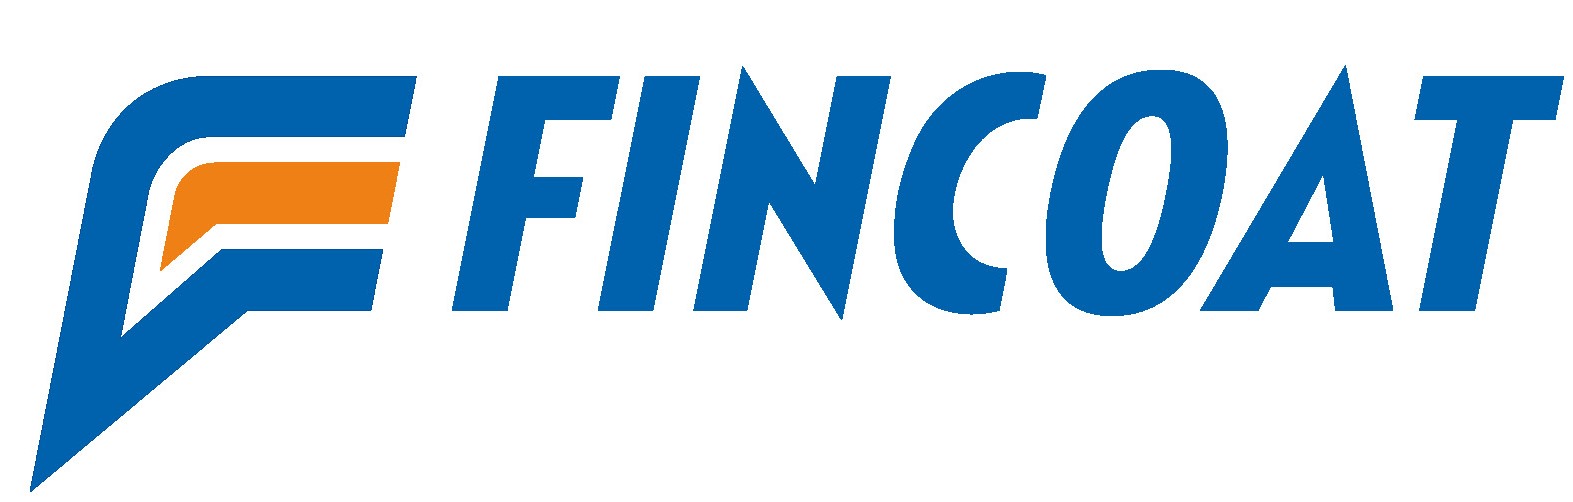 fincoat-logo